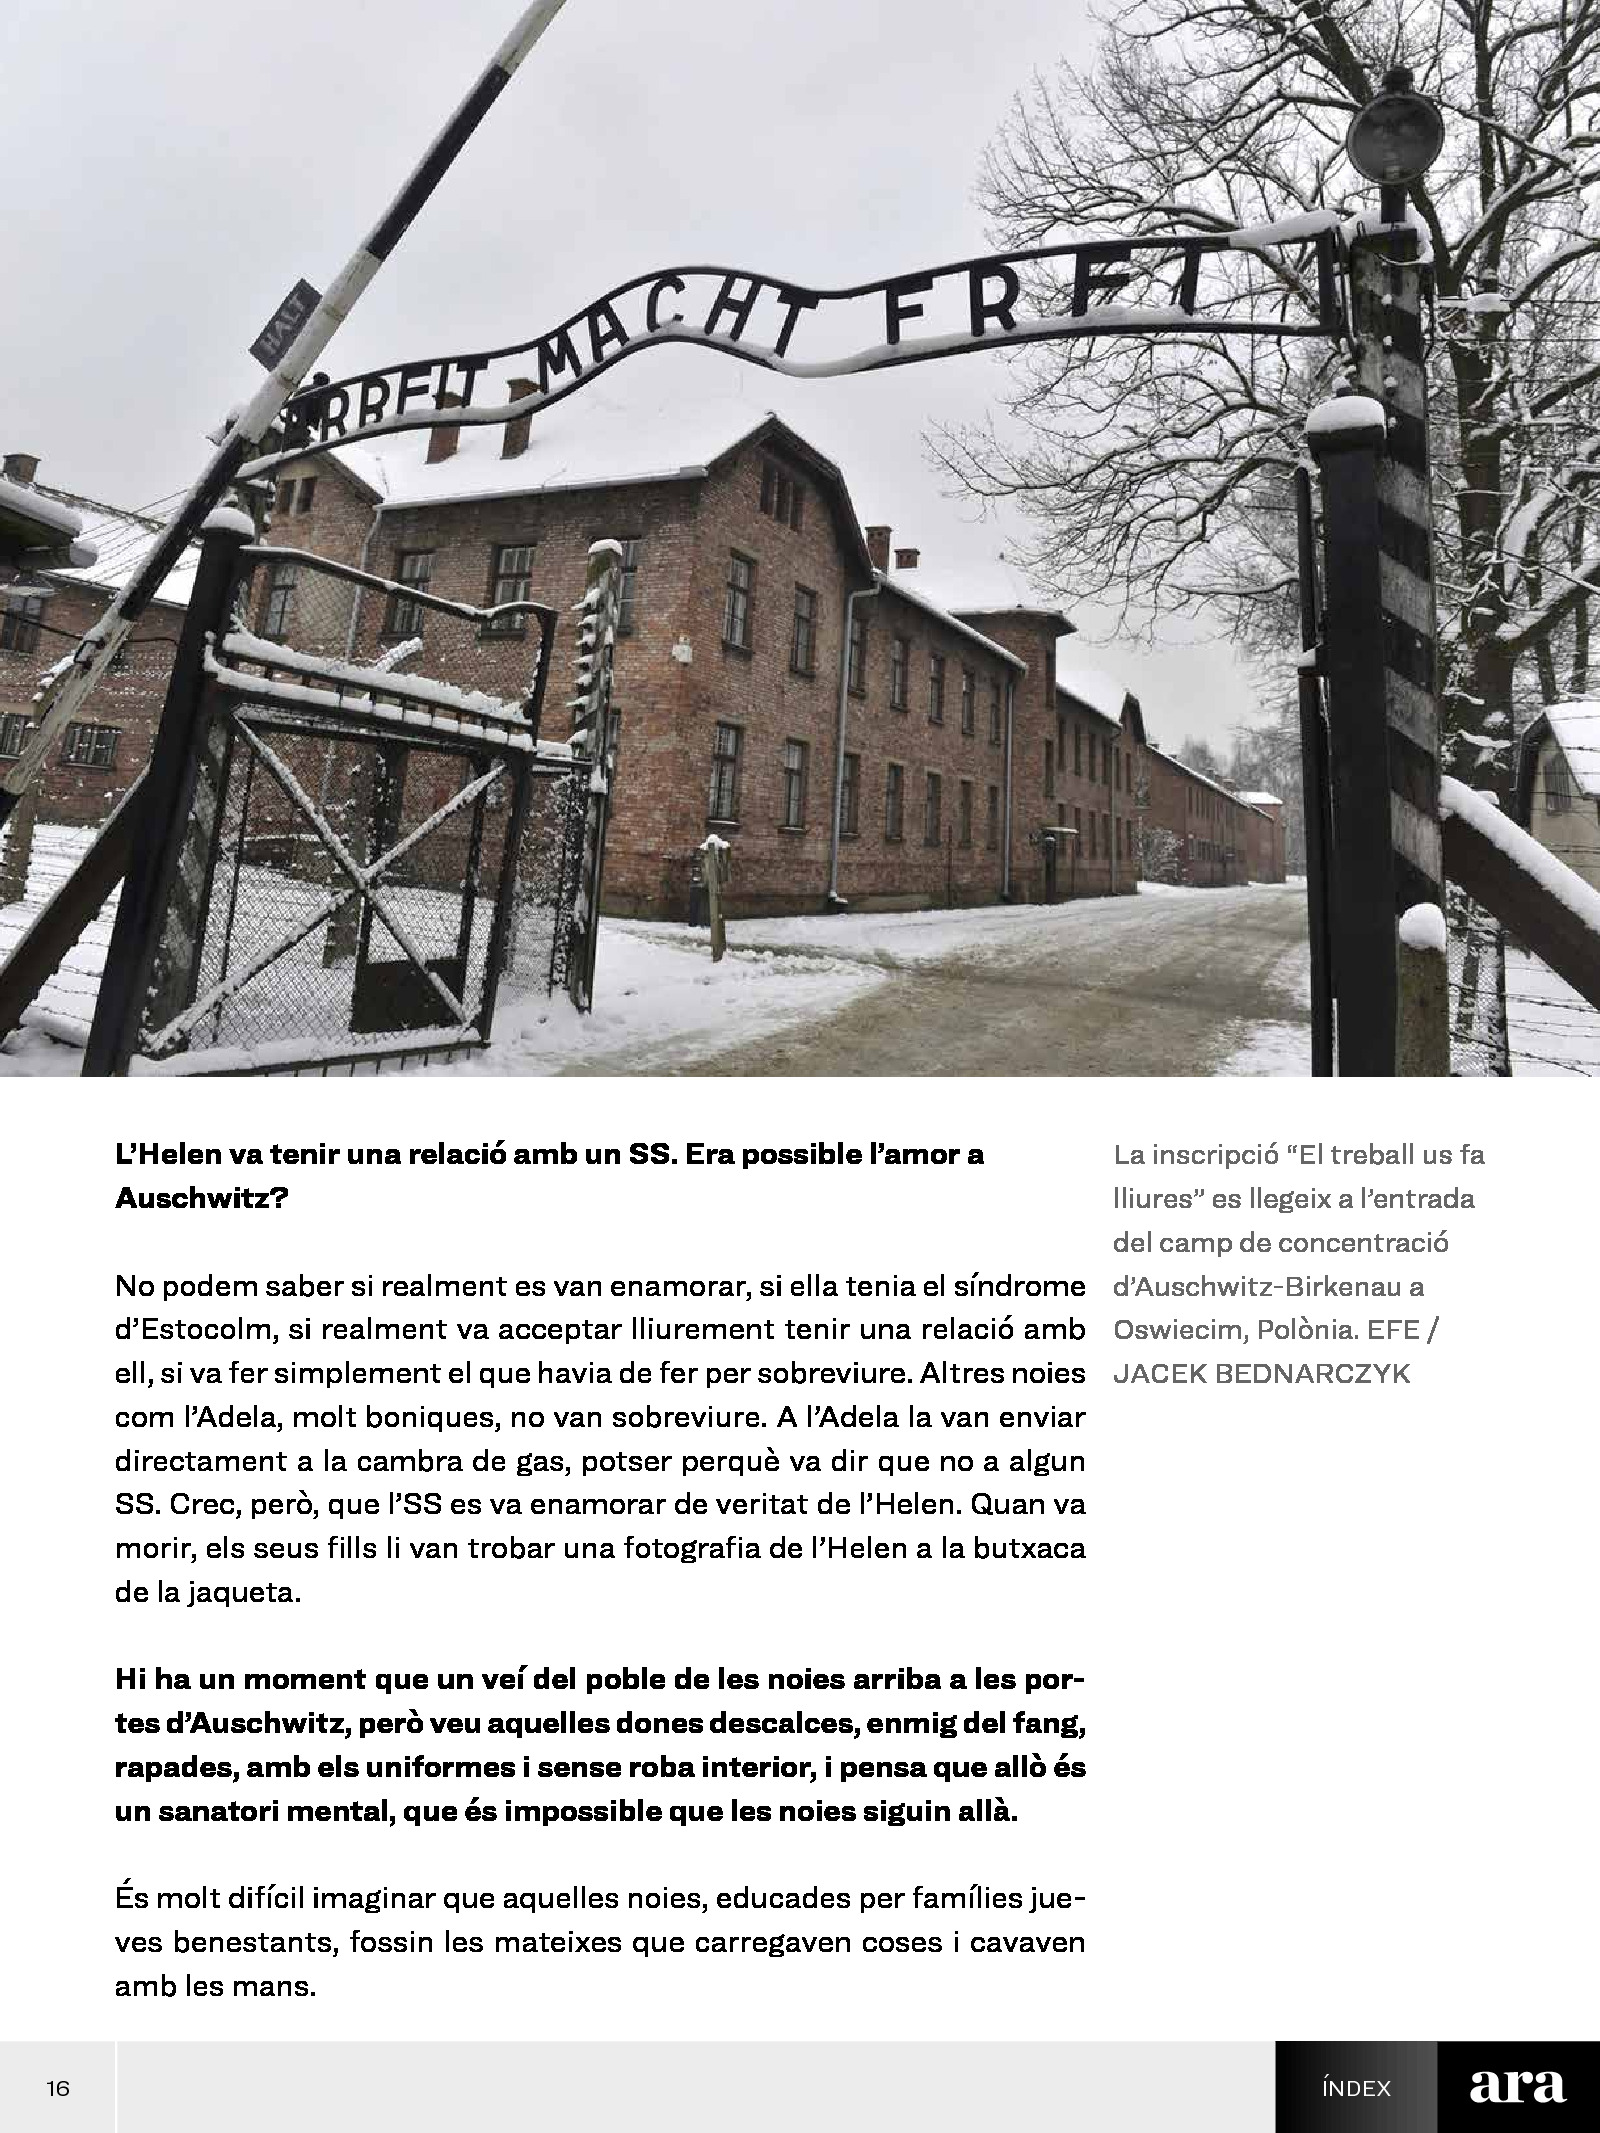 L'Holocaust, mai més! 2